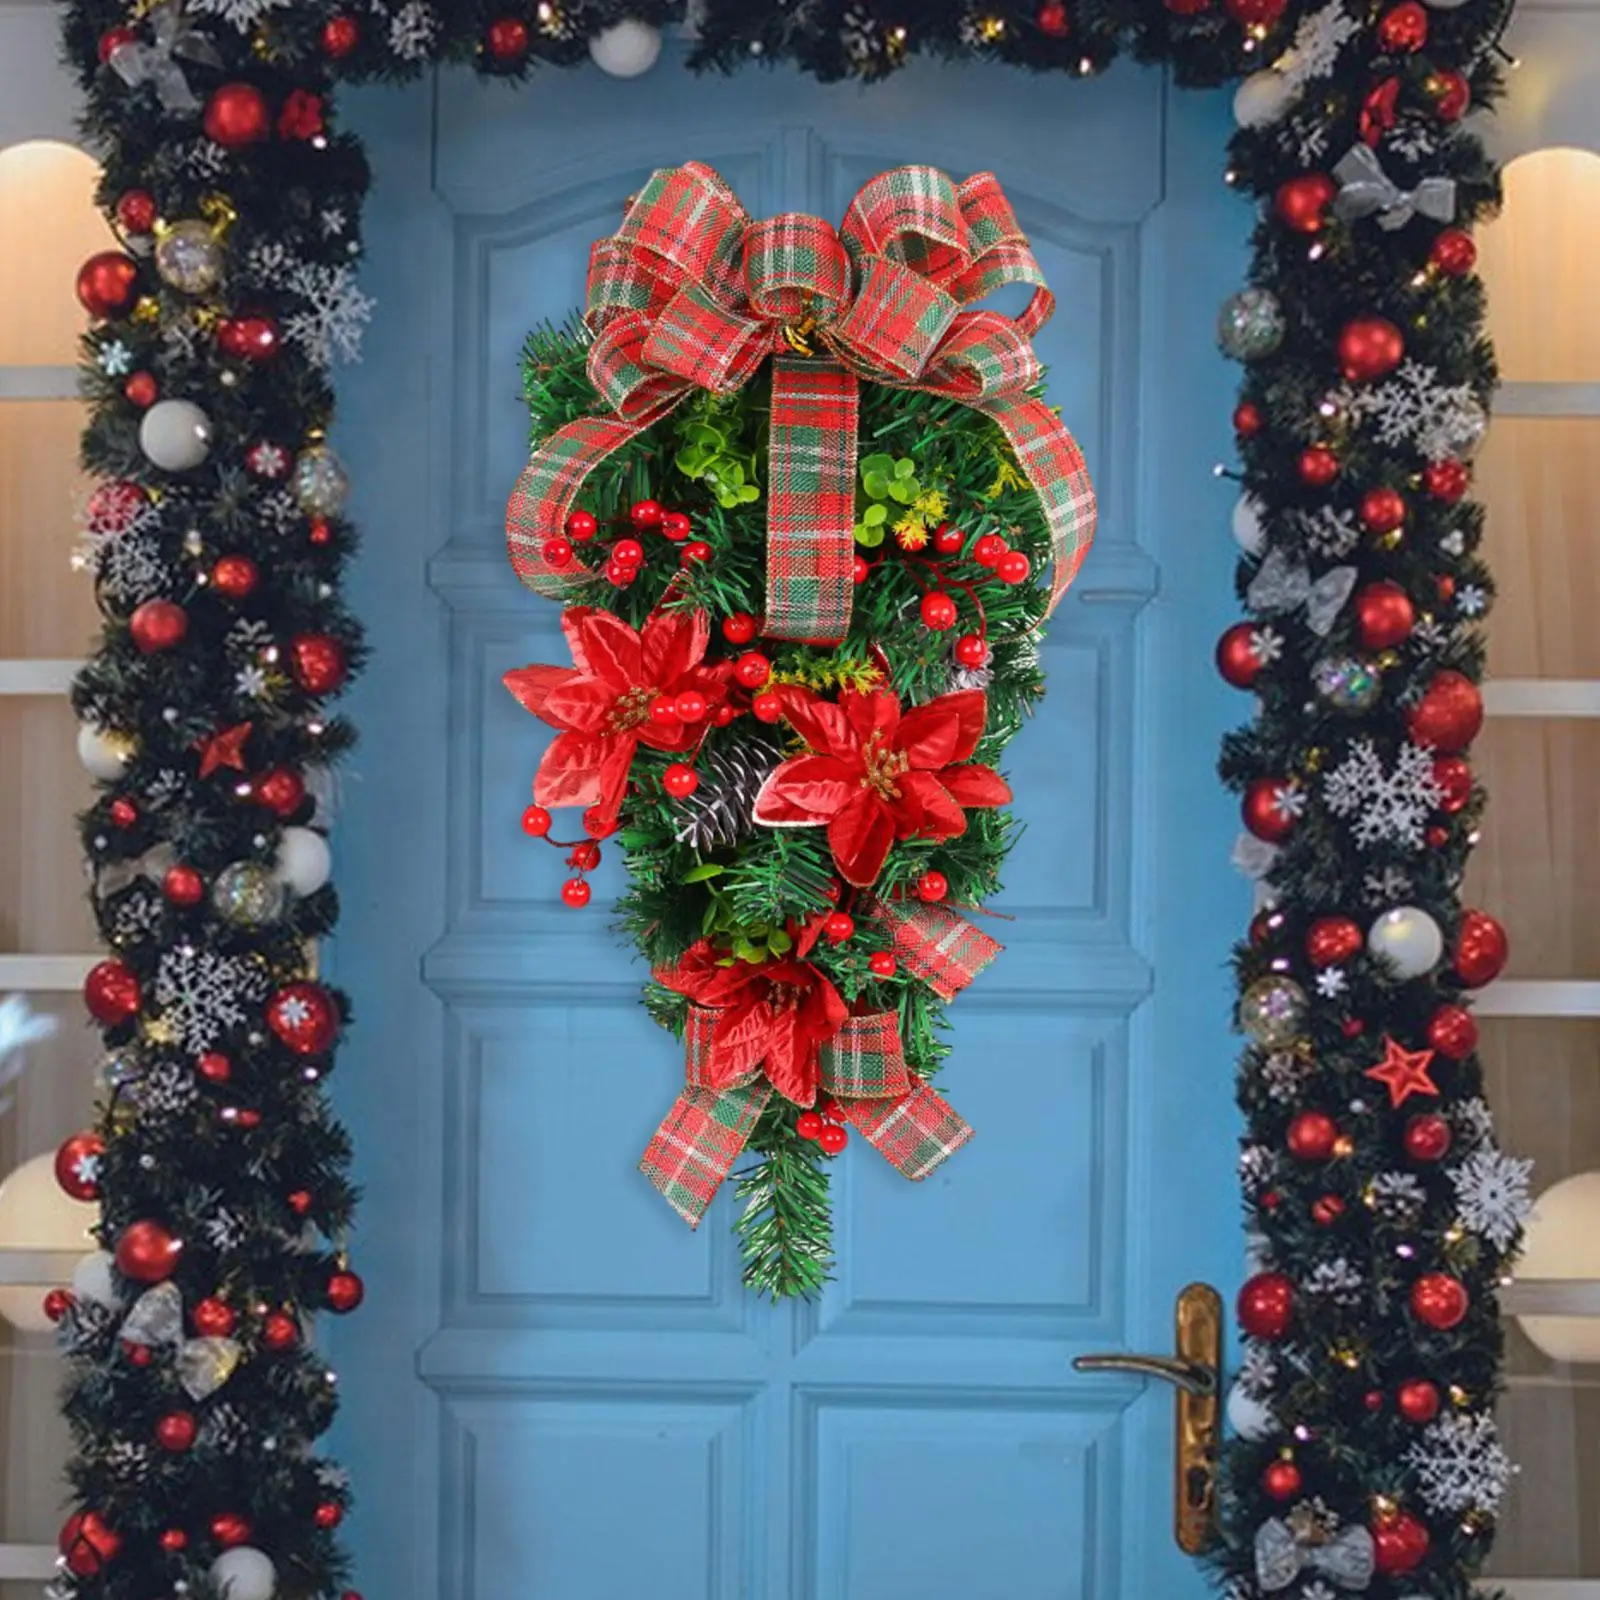 Xmas Door Swag Christmas Decoration Wreath Christmas Wreath Artificial Christmas Wreath for Windows Porch Farmhouse Home Door